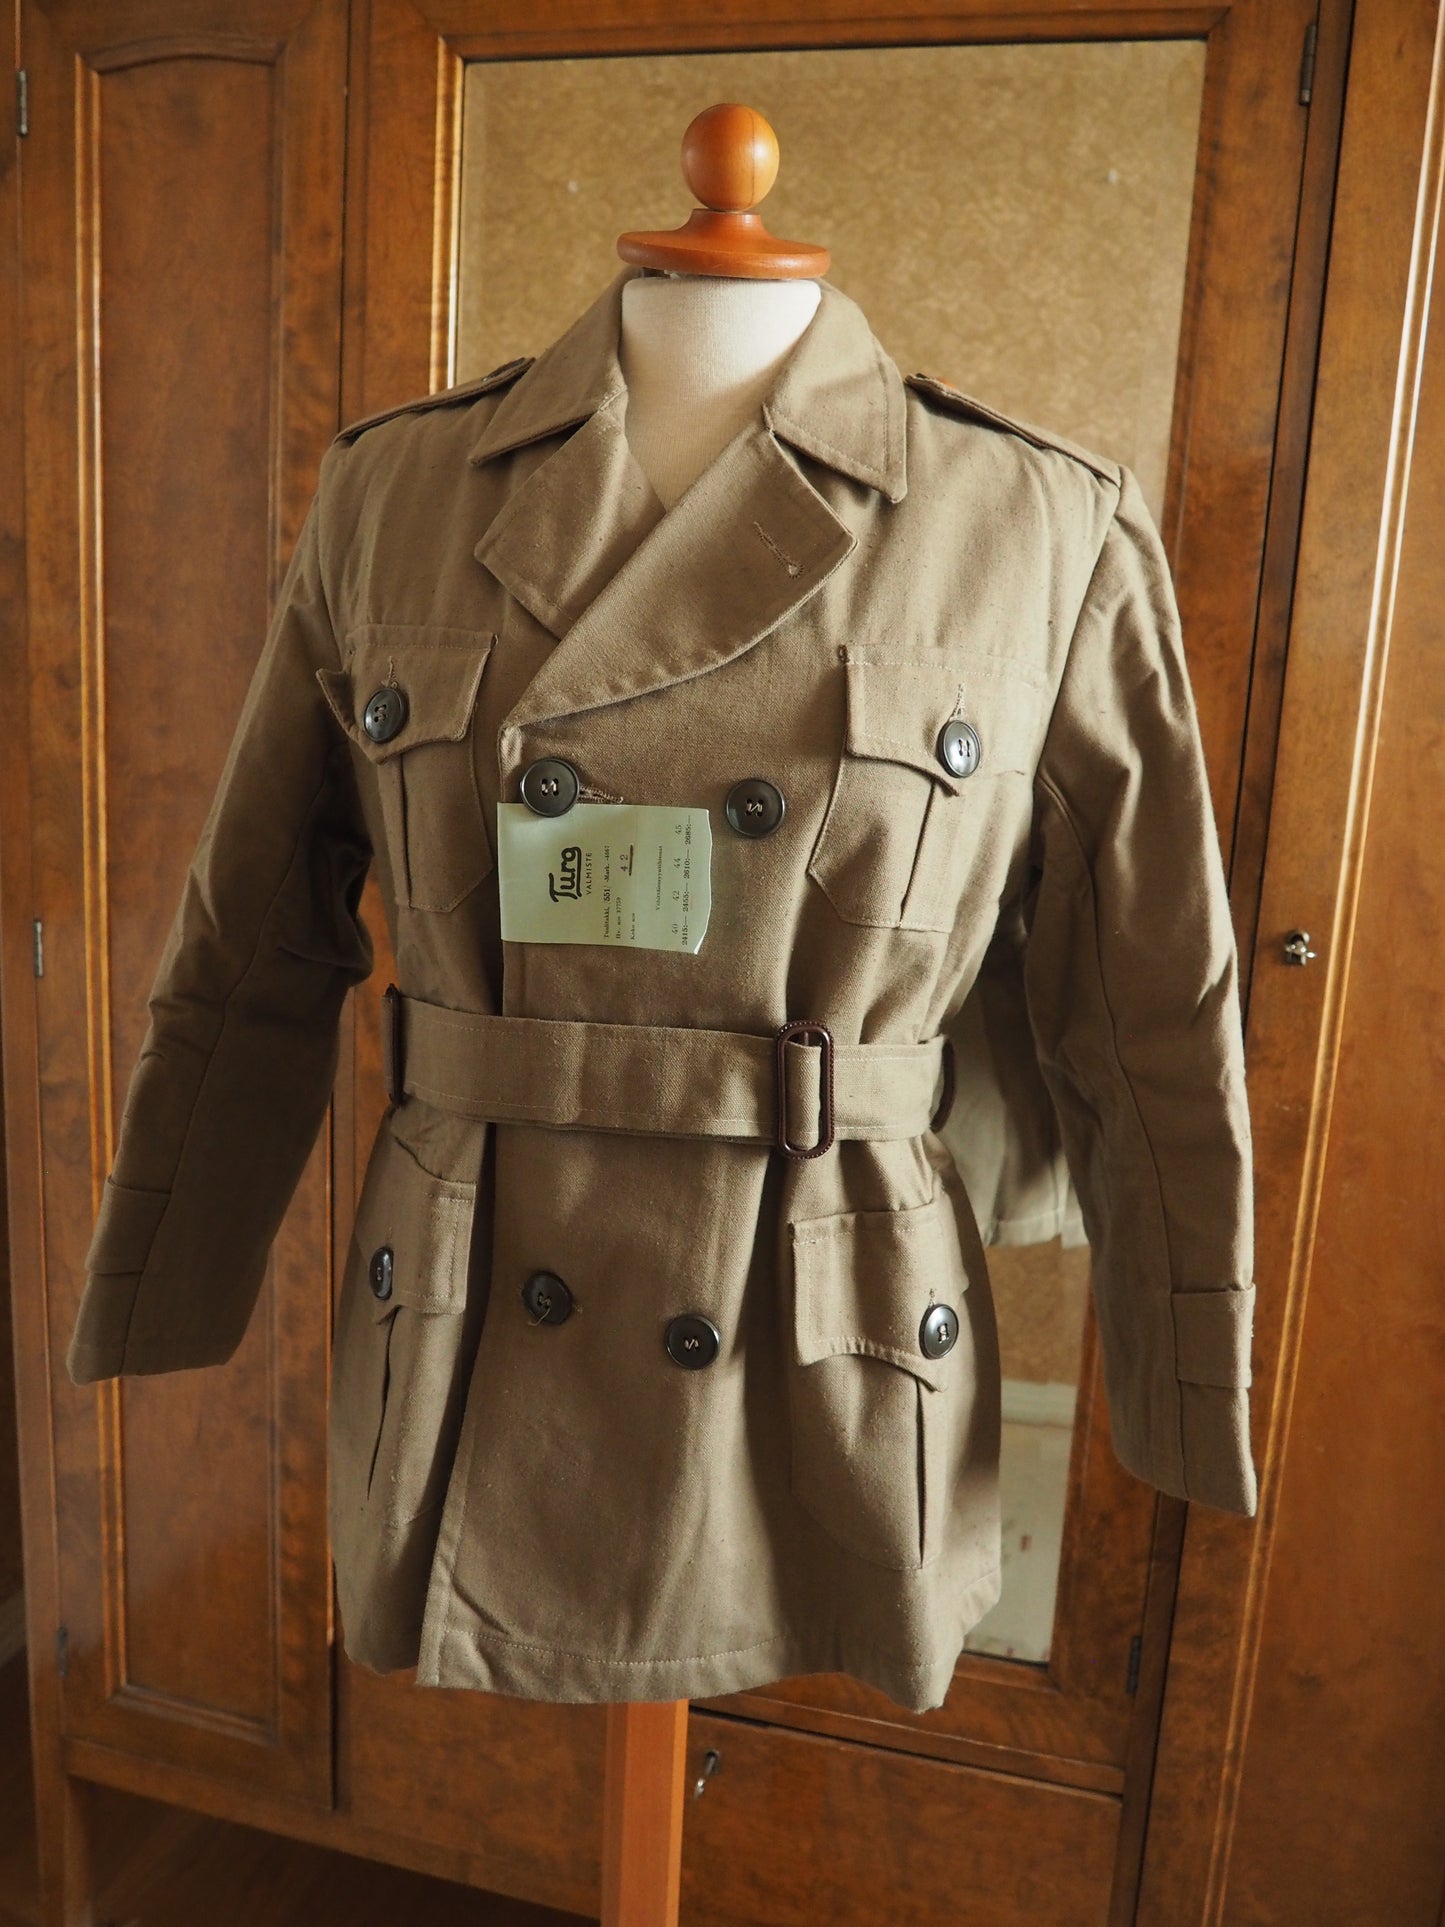 Vaaleanruskea takki, käyttämätöntä vanhaa varastoa